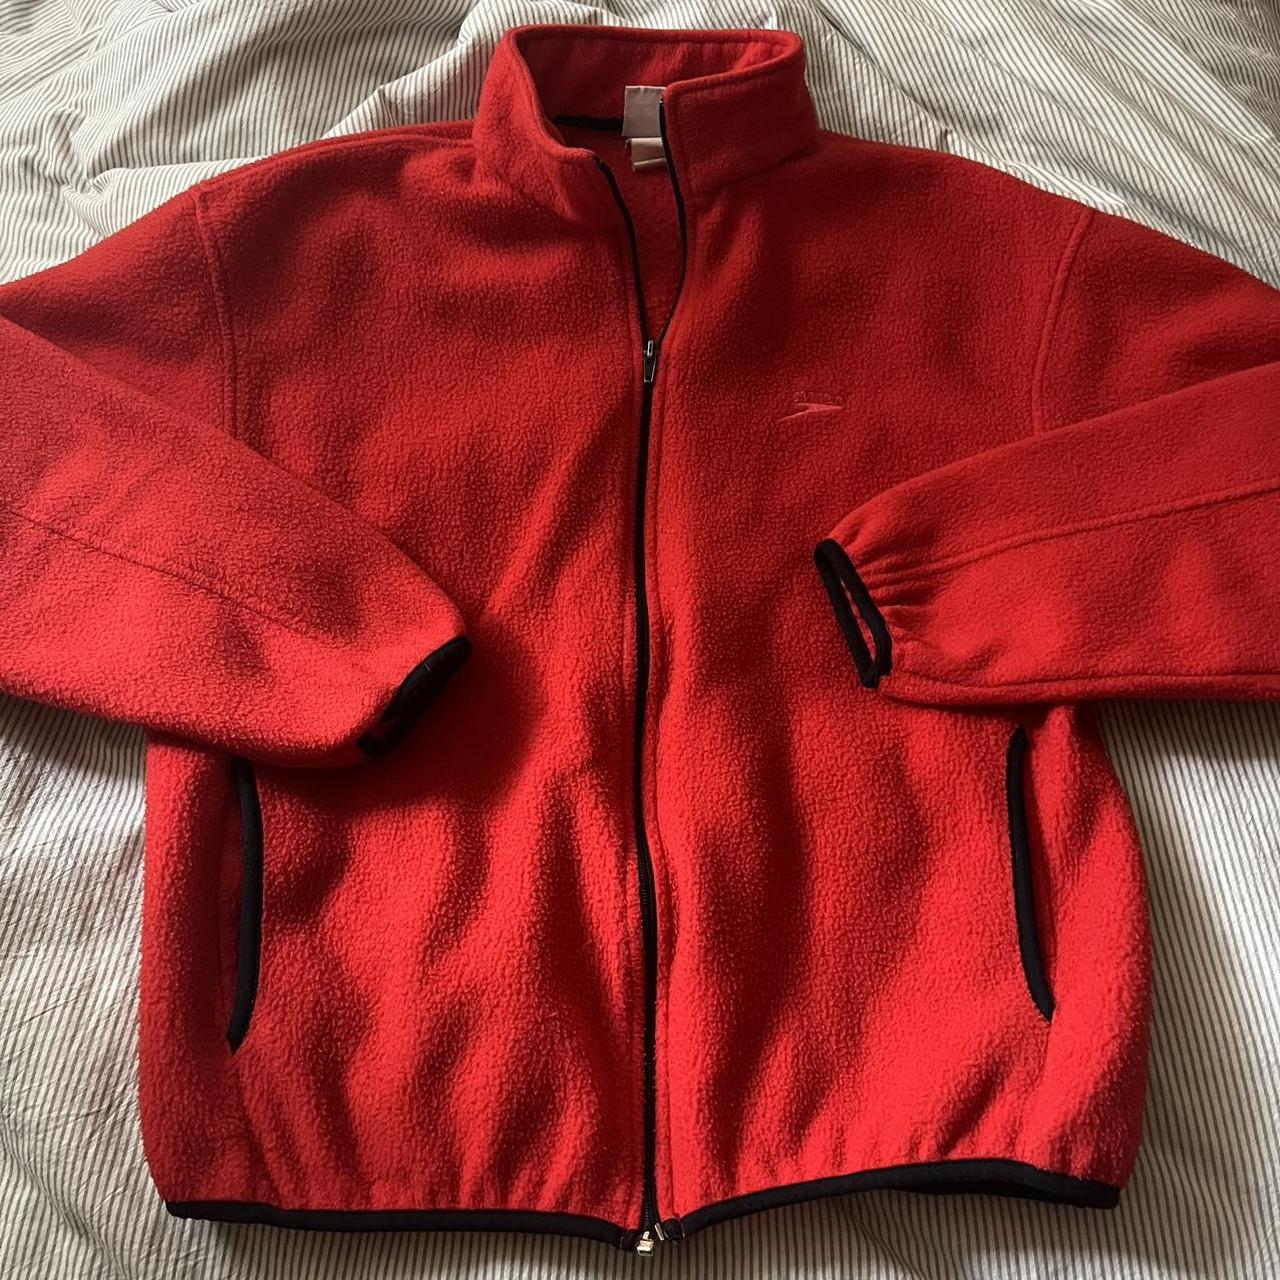 Speedo Men's Red Jacket